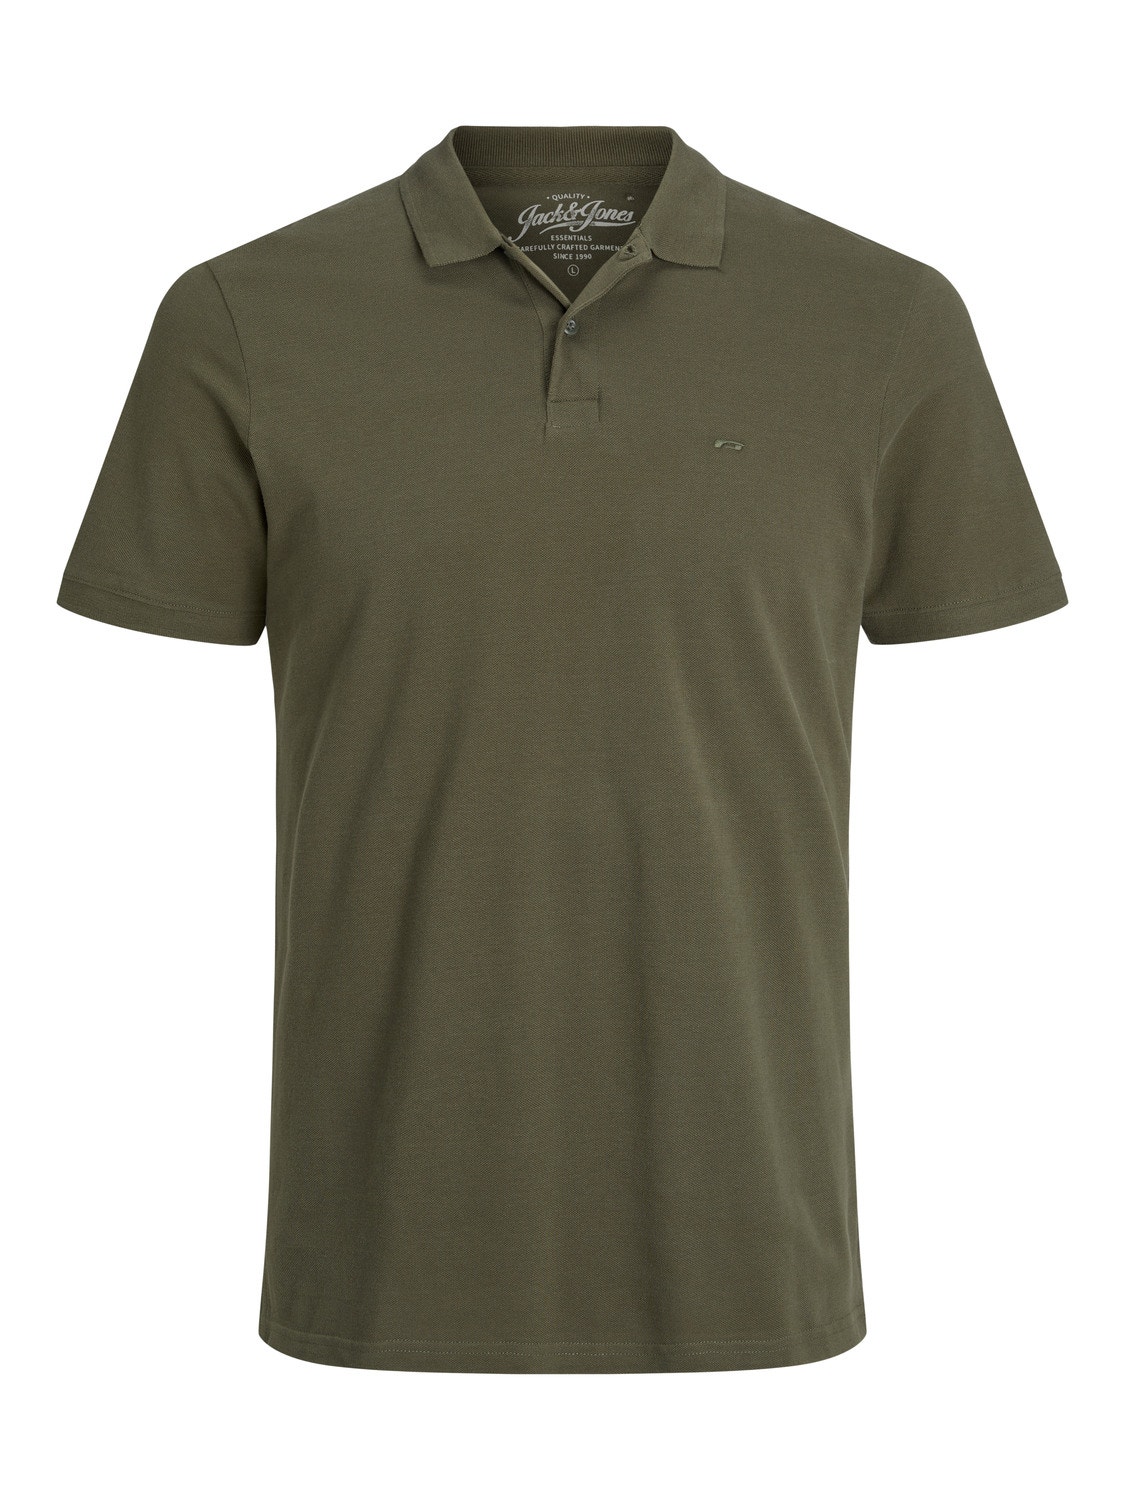 Jack & Jones Plain Polo T-shirt -Olive Night - 12136516